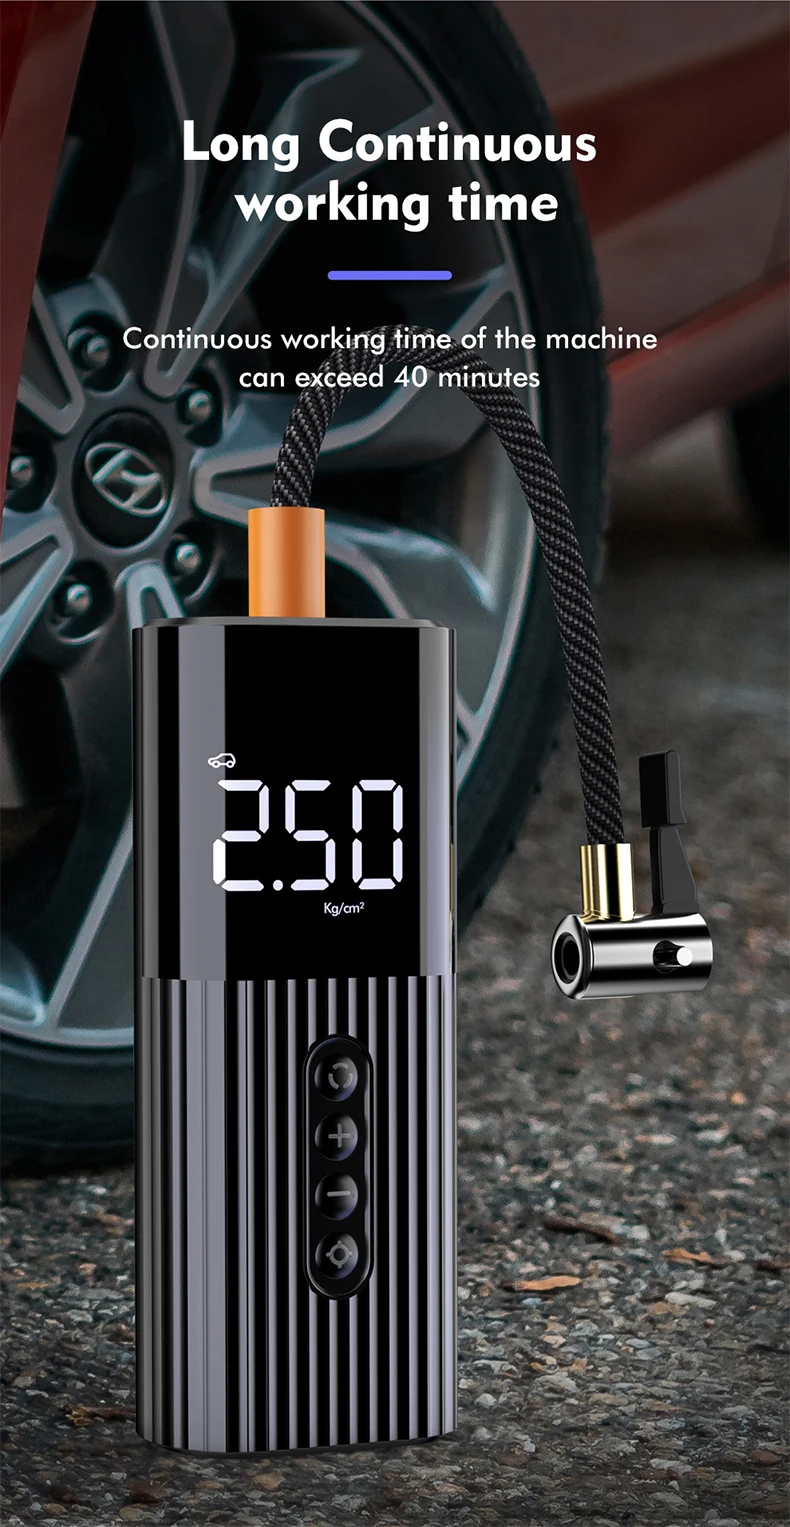 Licheers LC-301 mini car air pump digital Auto Tire Inflator Car Tyre compressor air Pump